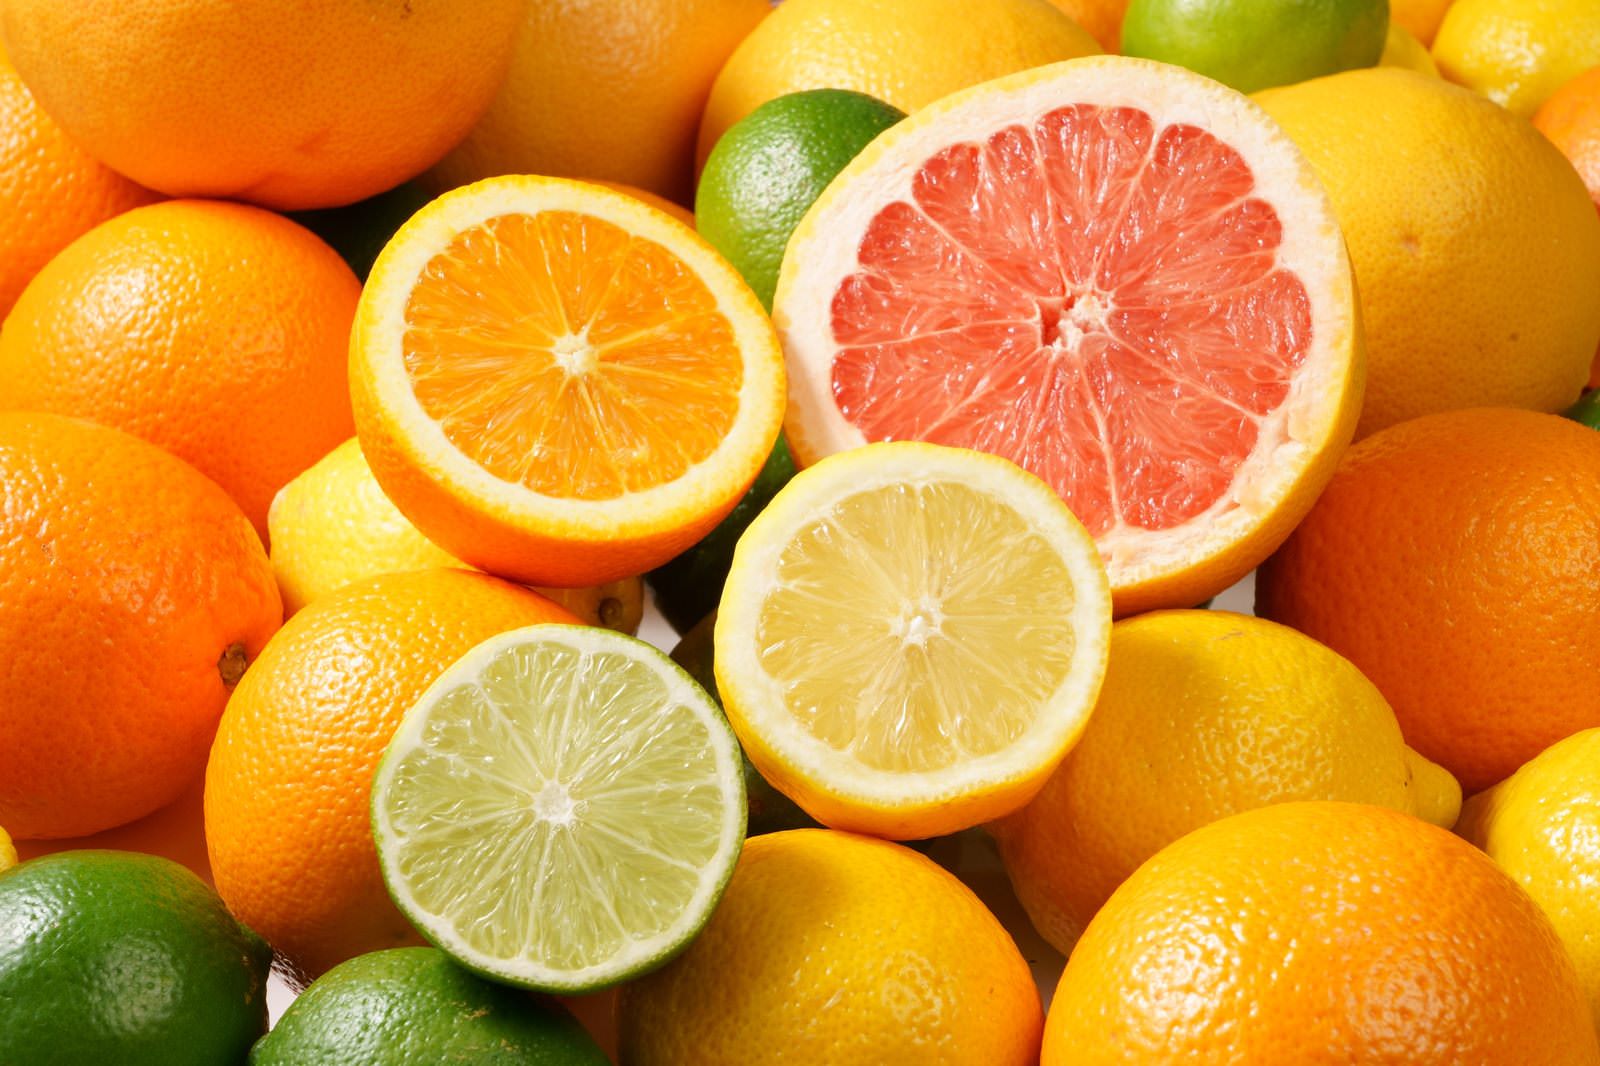 「ハーフカットした柑橘系フルーツの盛り合わせ | フリー素材のぱくたそ」の写真